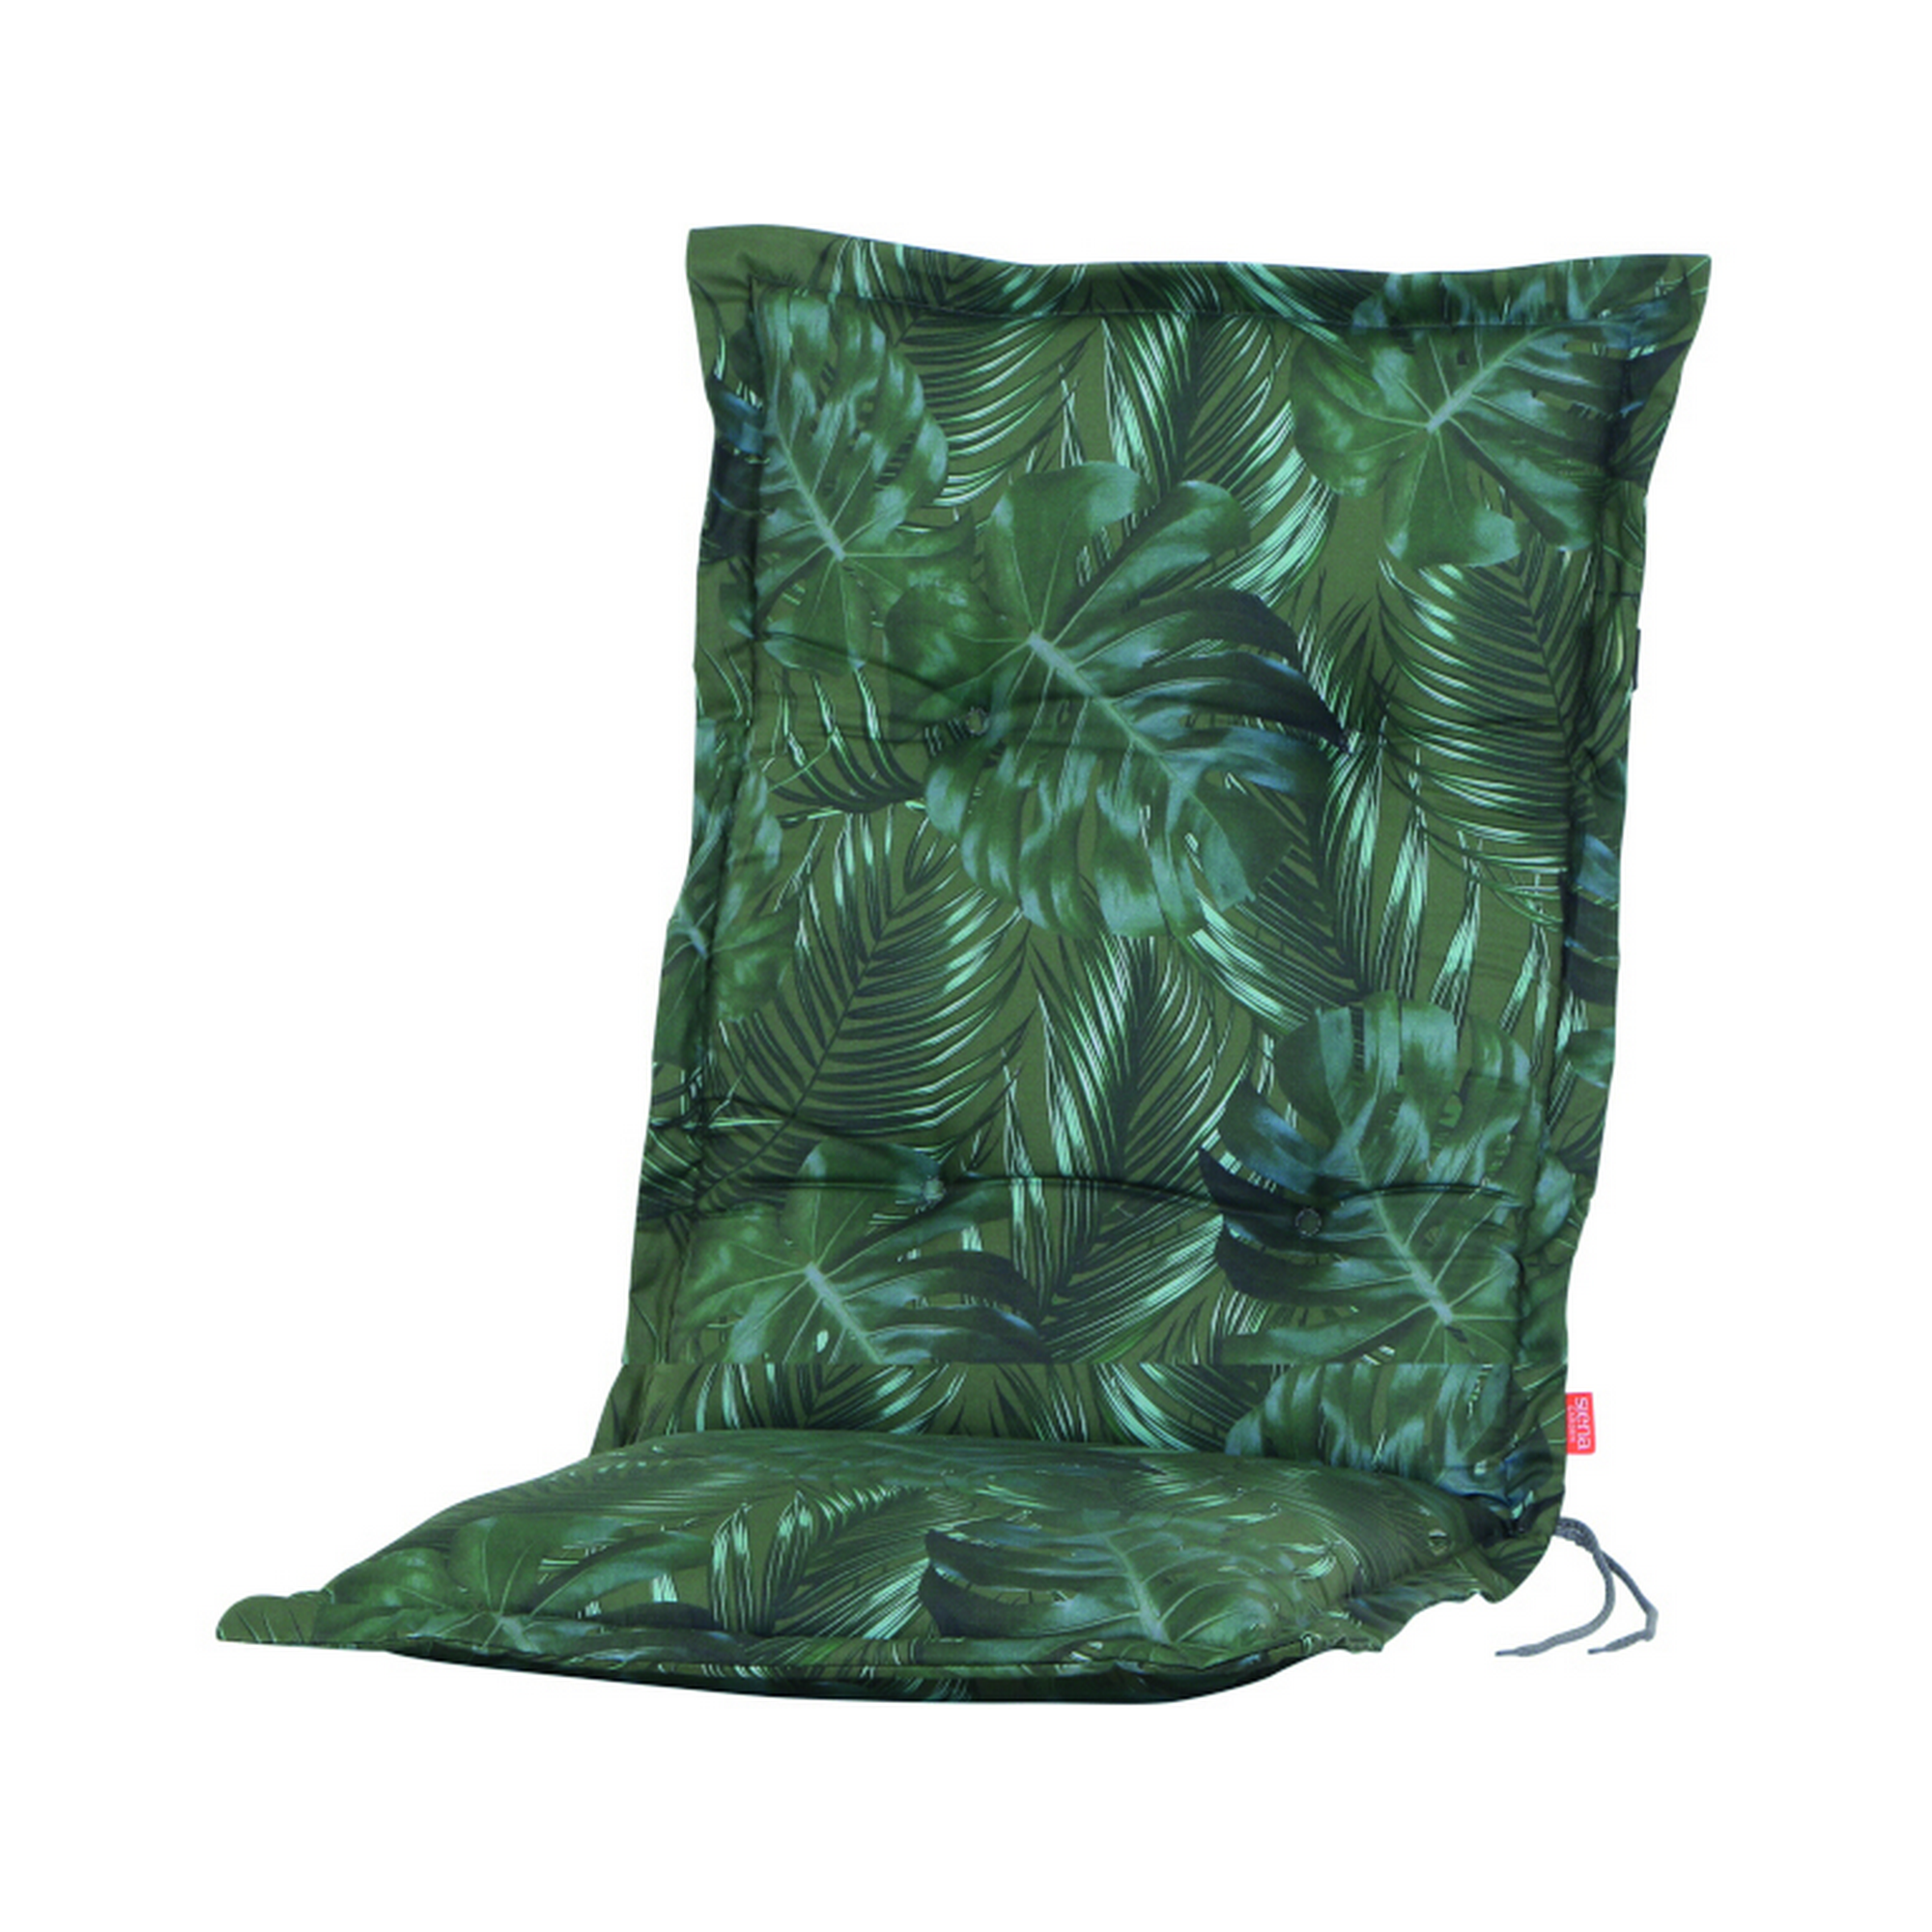 Sesselauflage 'Xora' grün 110 x 48 cm + product picture